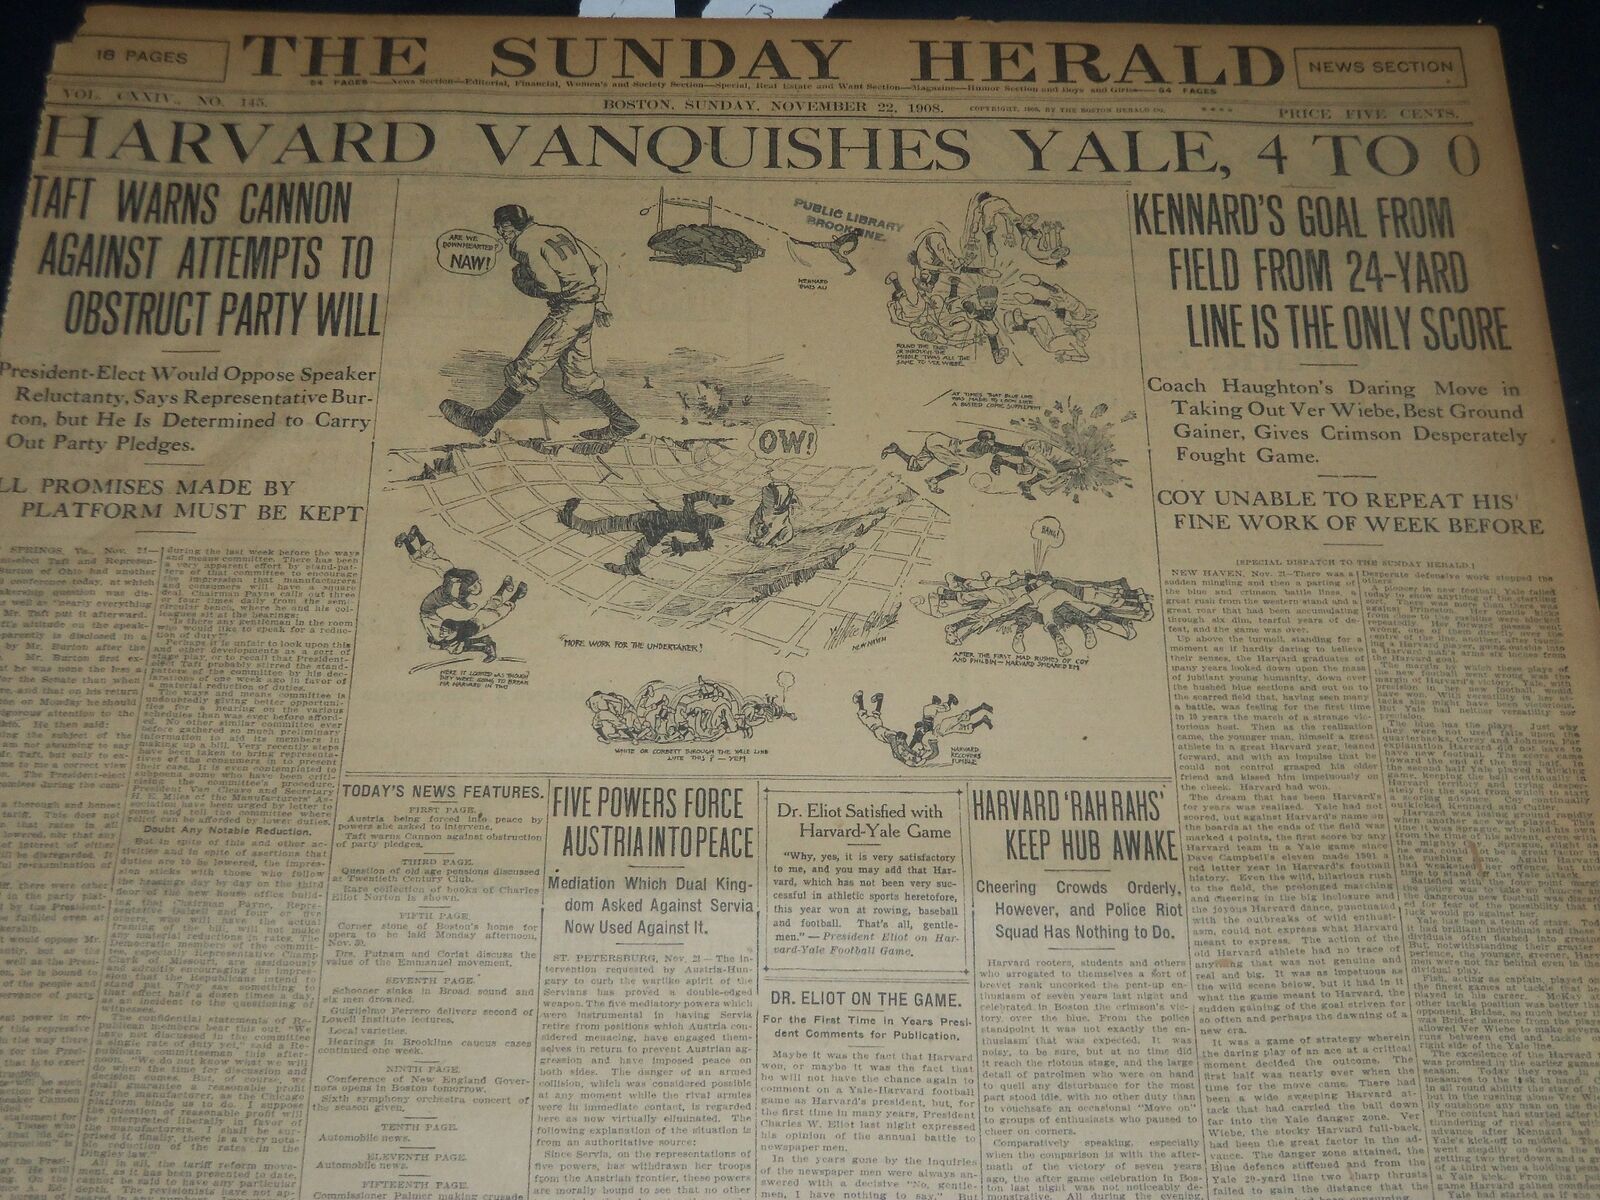 1908 NOVEMBER 22 THE BOSTON HERALD - HARVARD VANQUISHES YALE 4-0 - BH 218